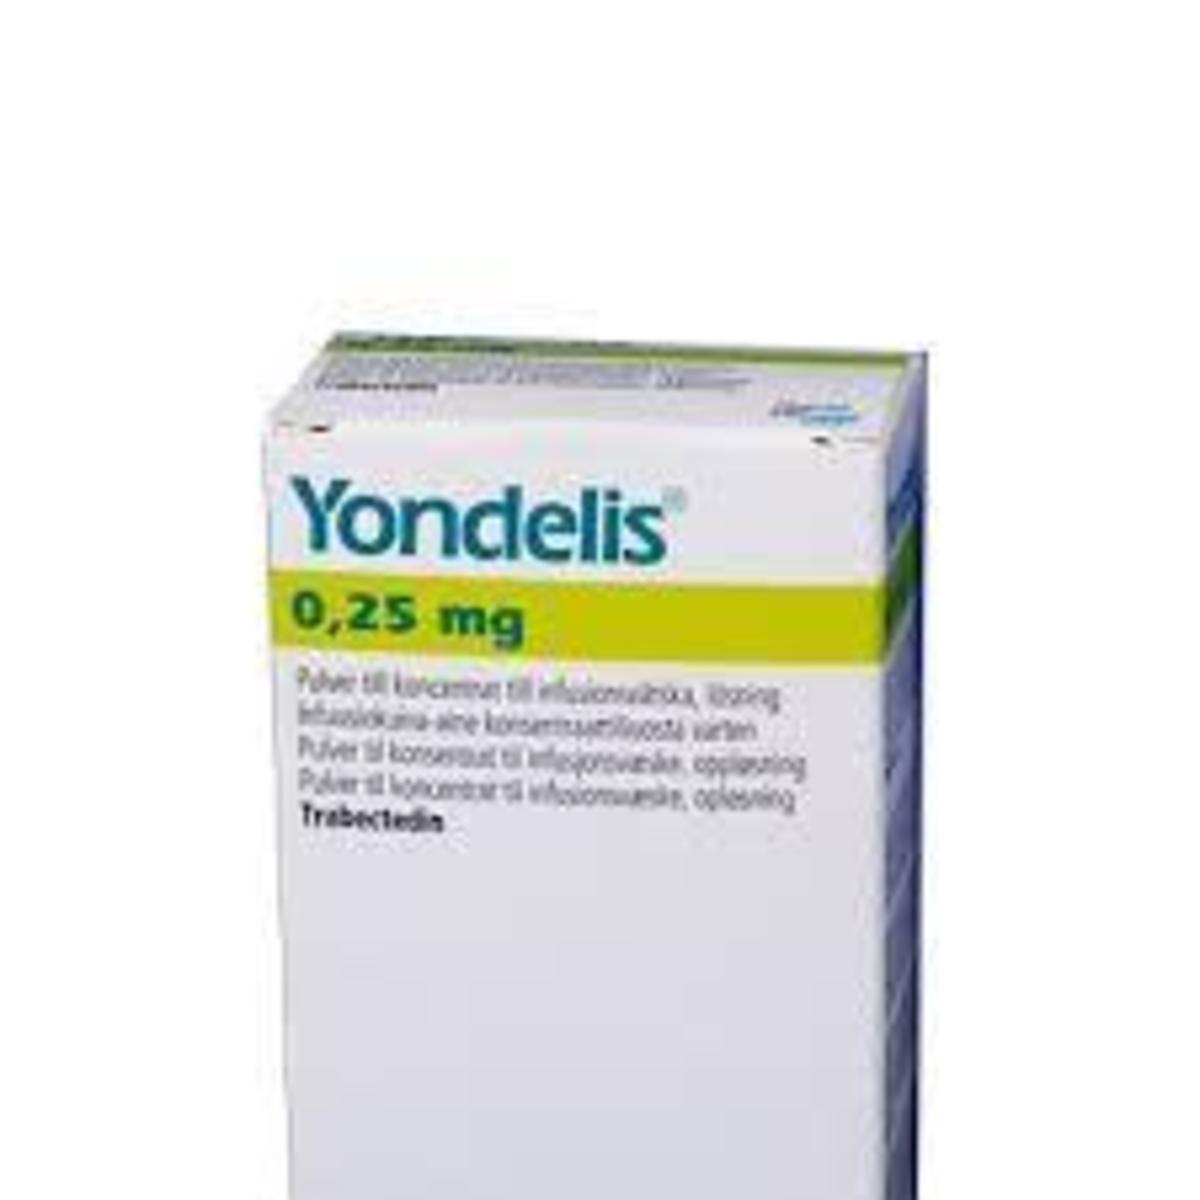 Ανάκληση παρτίδων του φαρμακευτικού προϊόντος YONDELIS